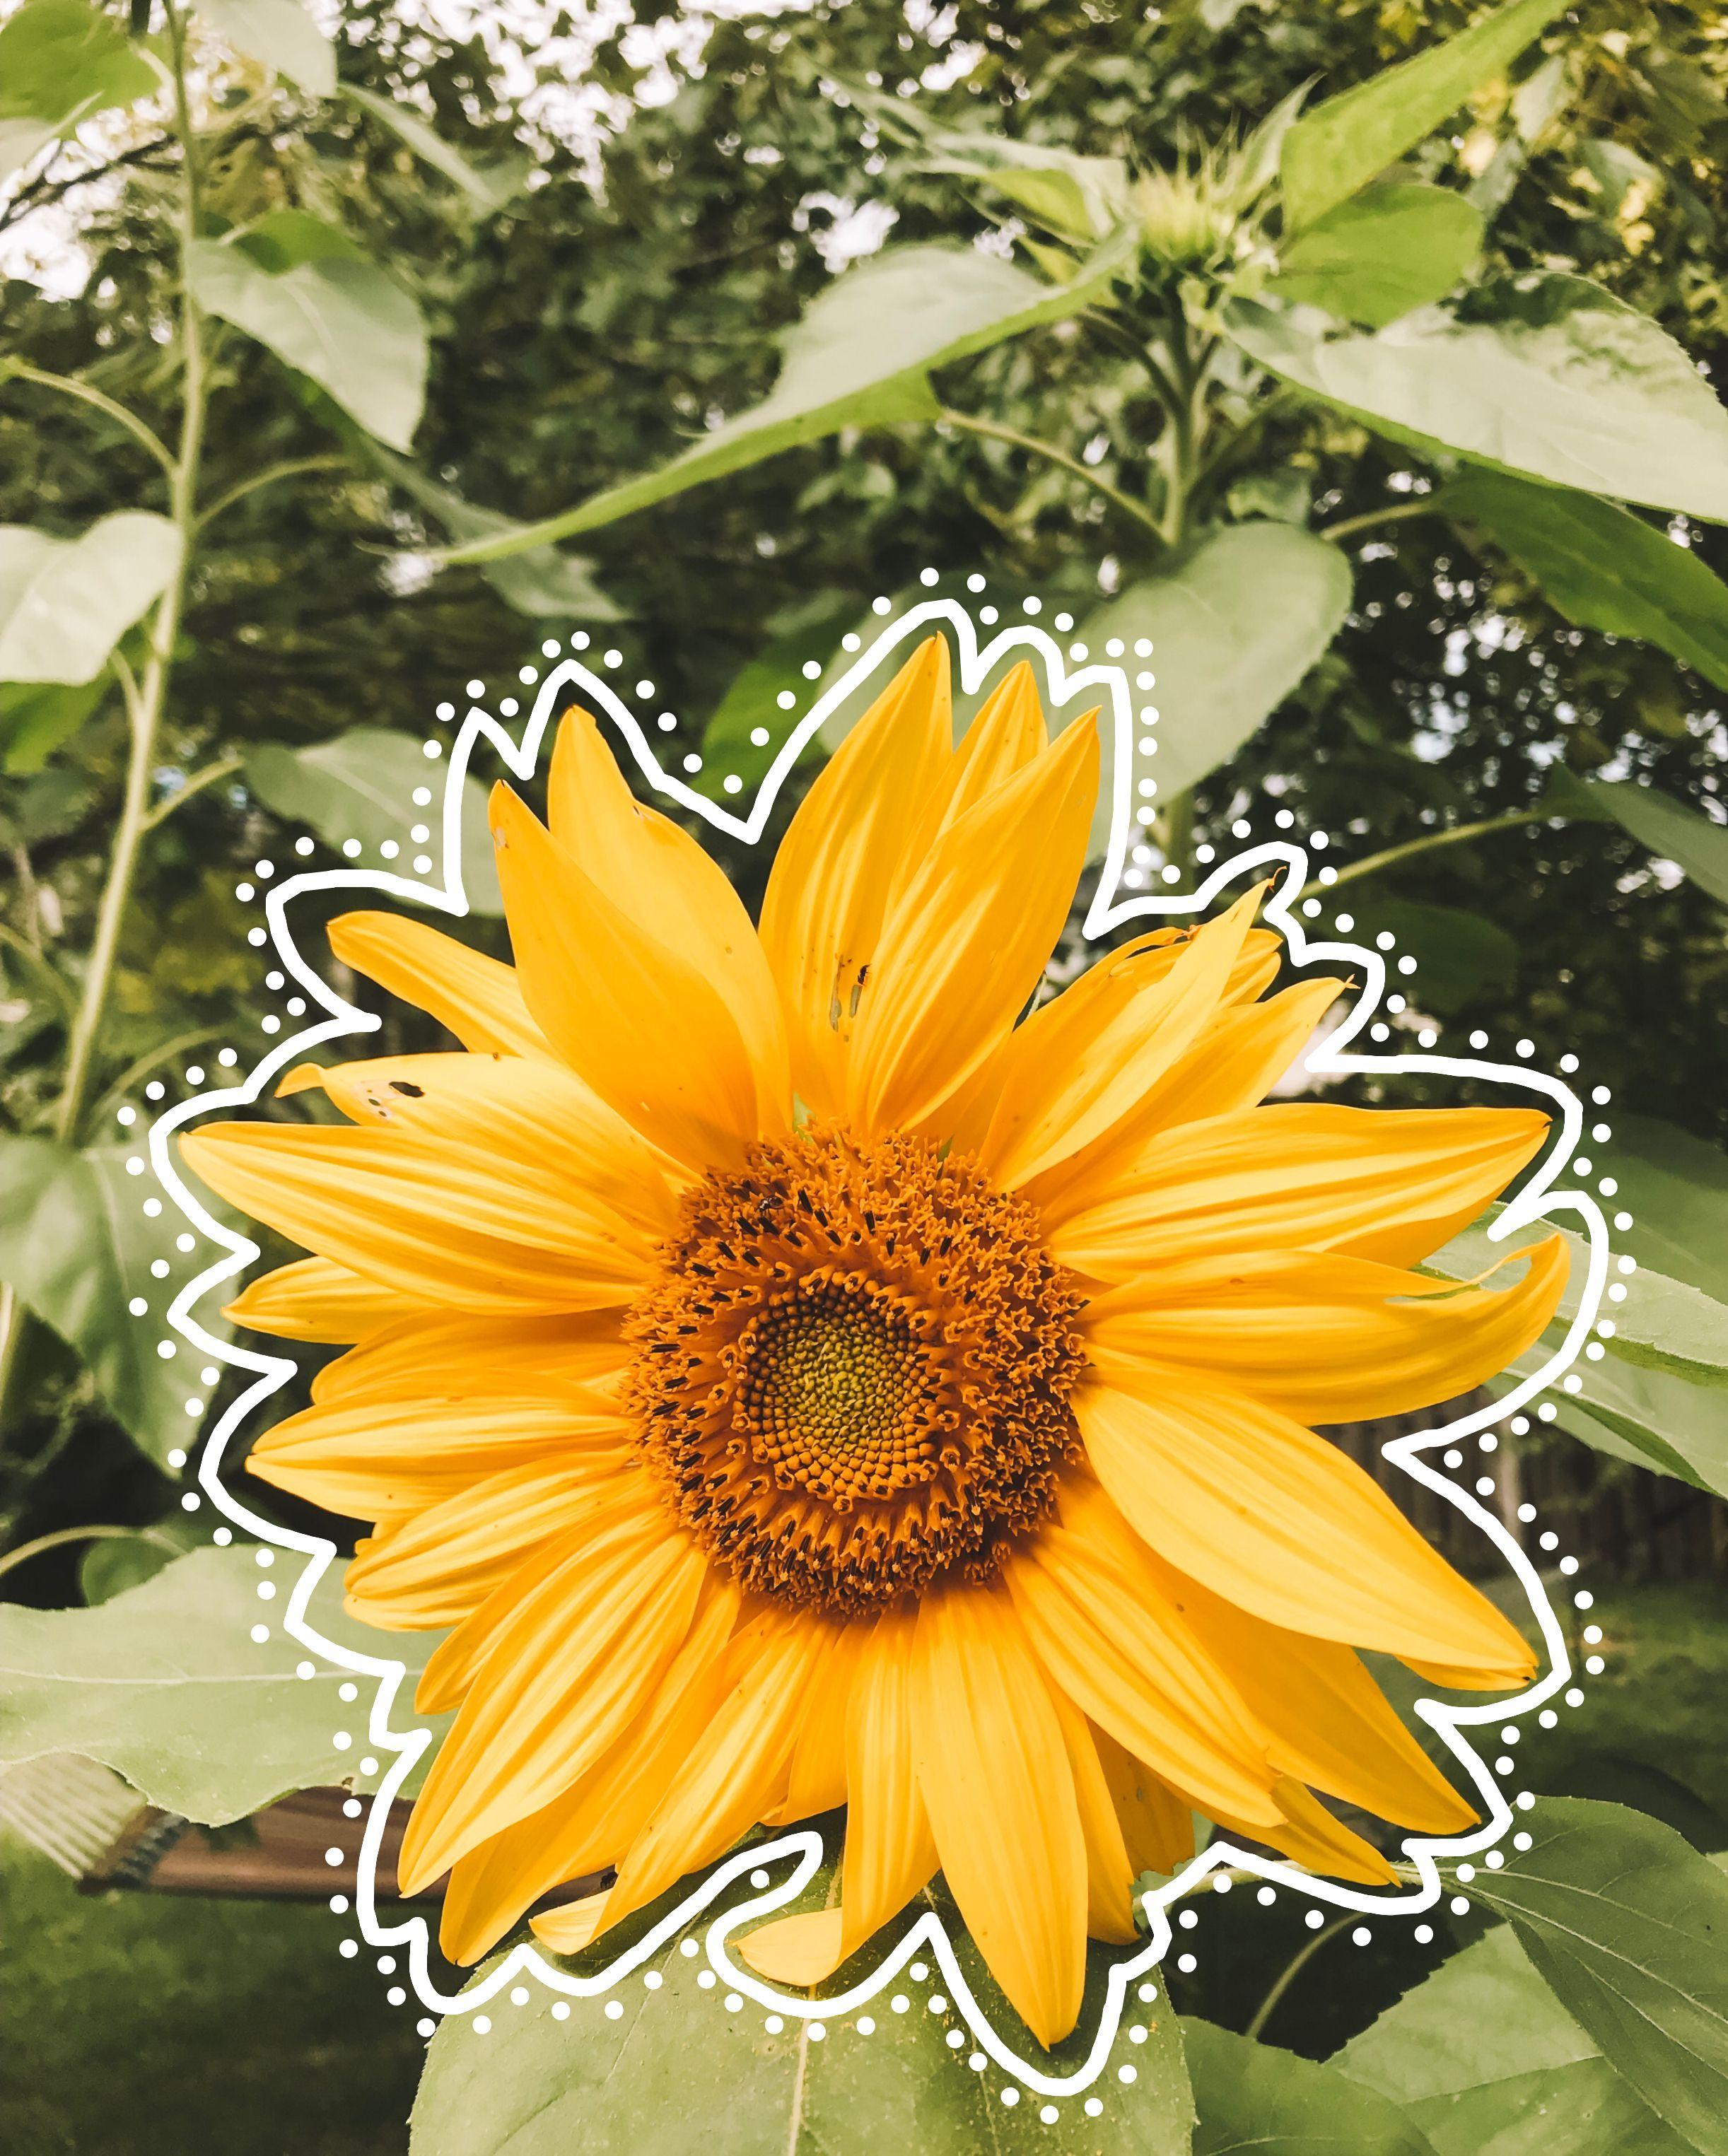 VSCO Sunflower Wallpaper Free VSCO Sunflower